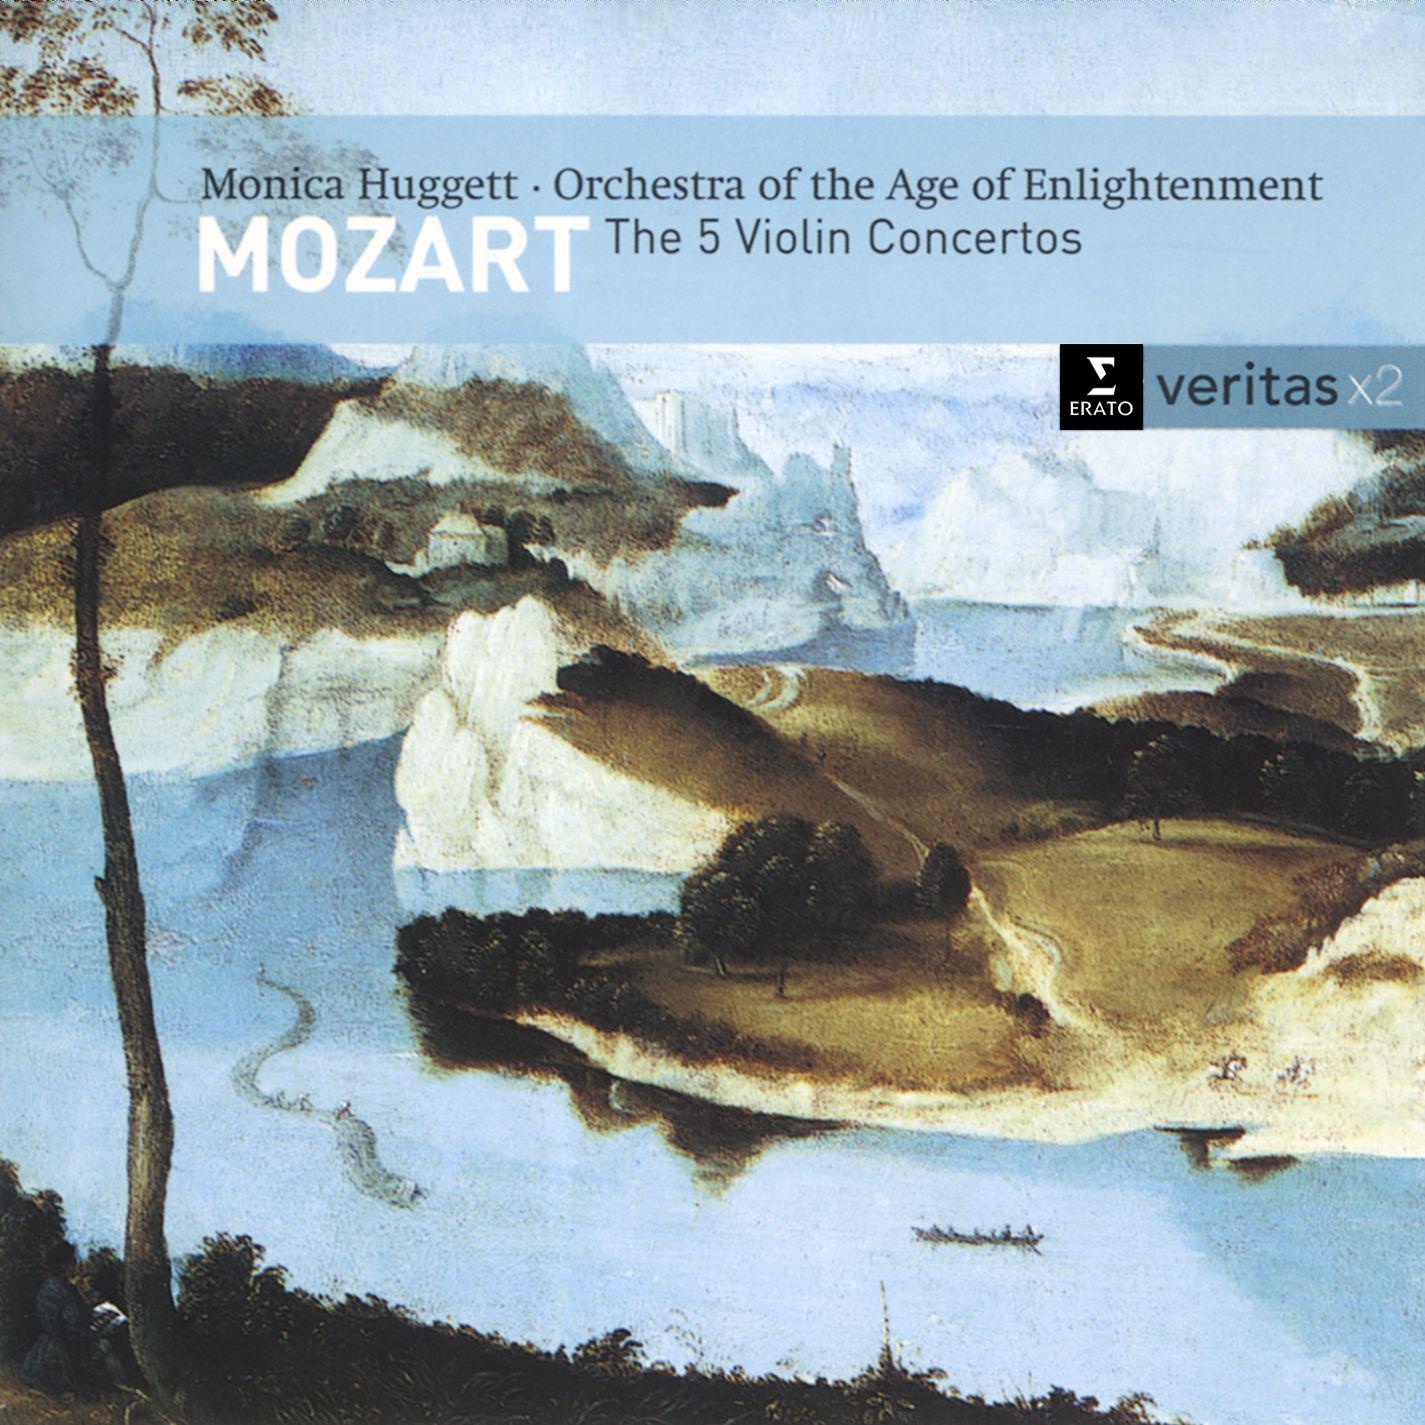 Violin Concerto No. 2 in D major K211: II. Andante